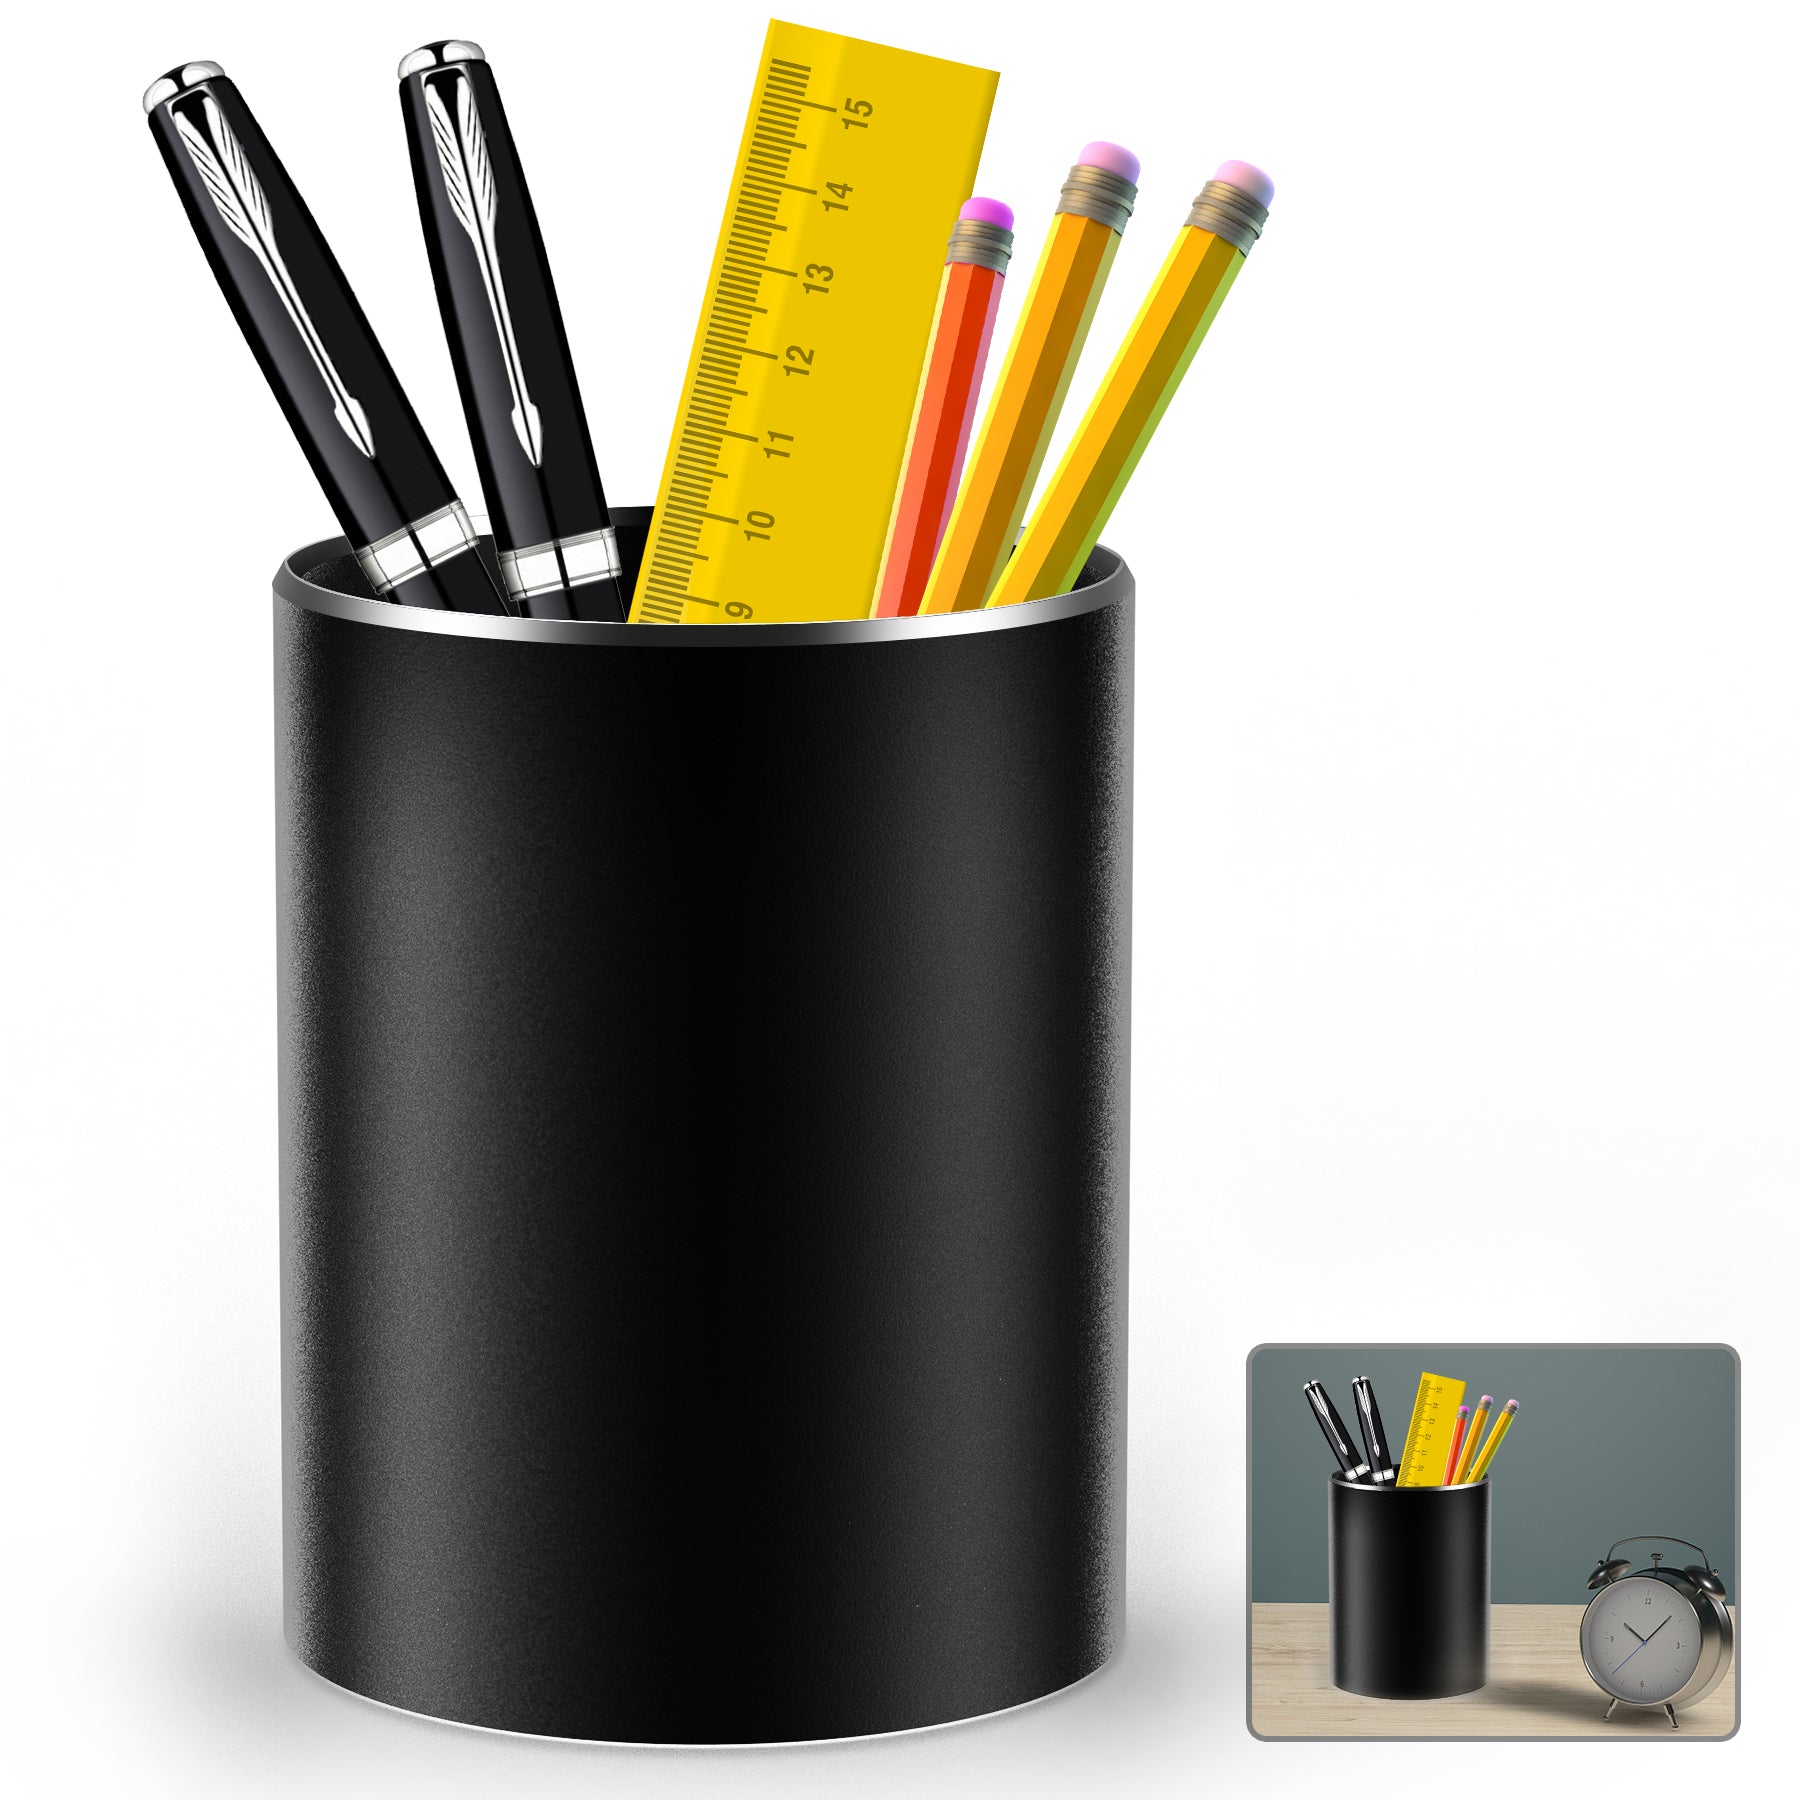 Giecy Pen Holder Pencil Holder for Desk Metal Desk Pen Cup